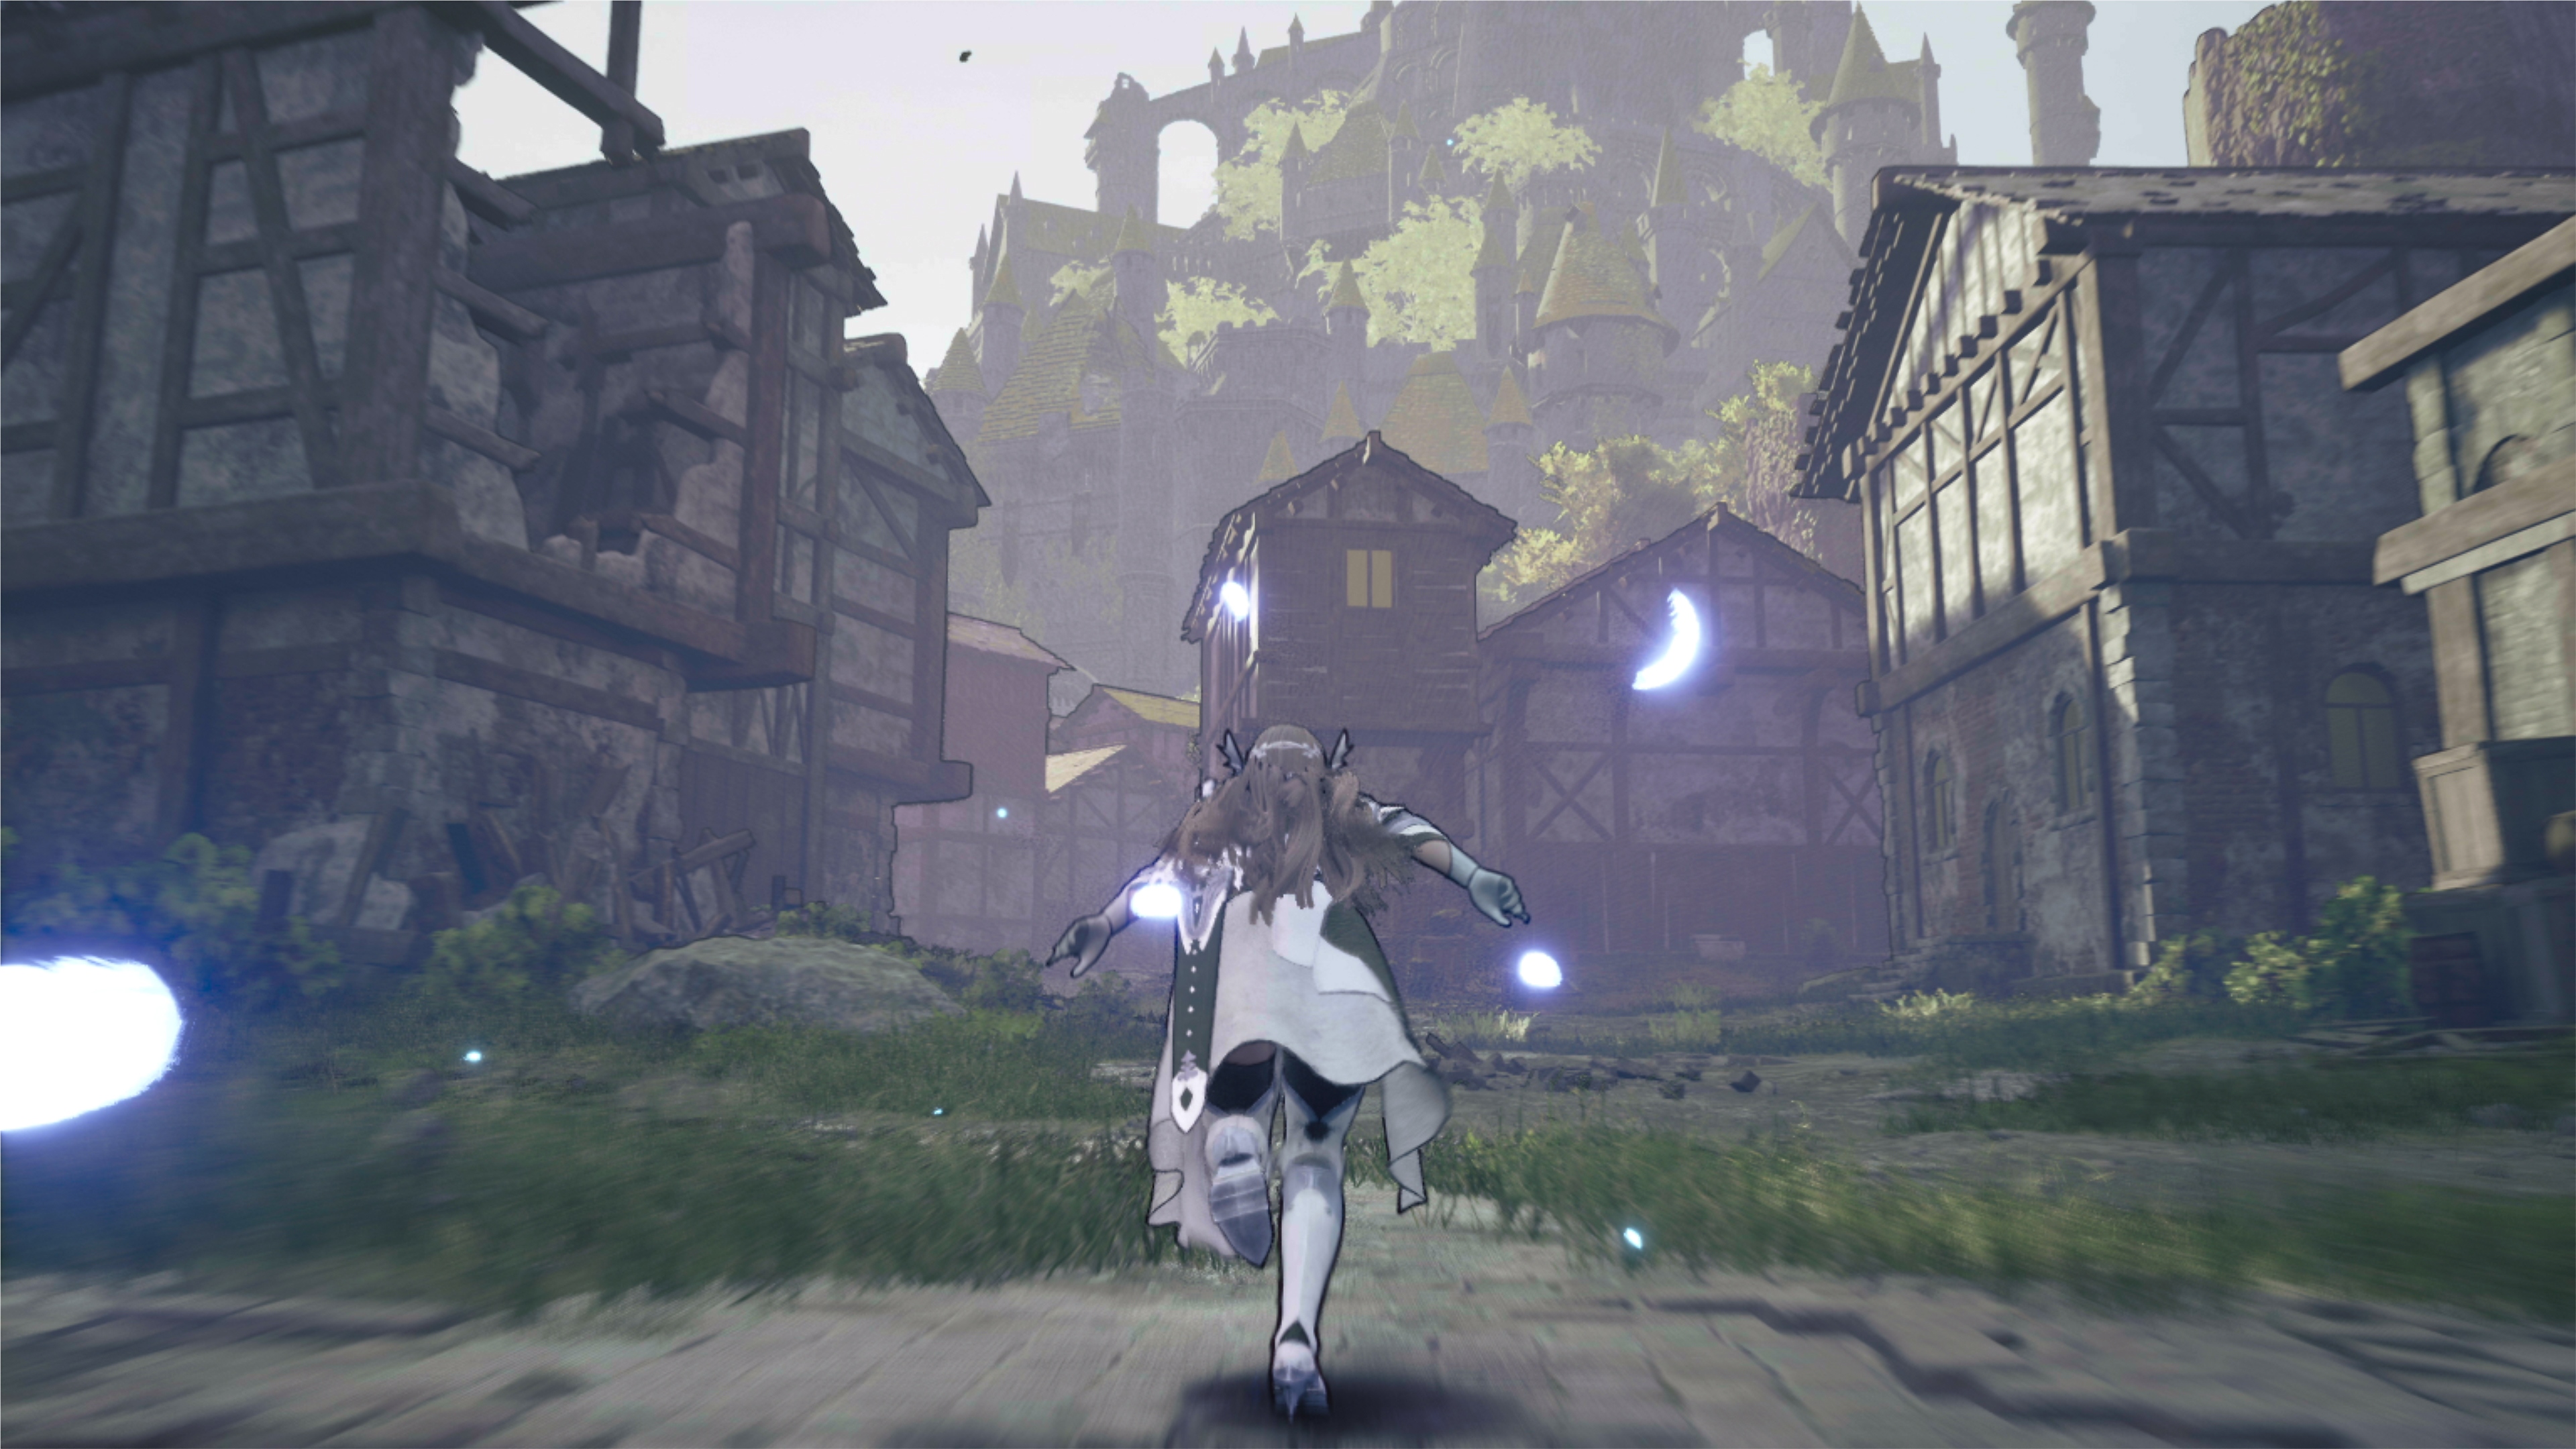 Valkyrie Elysium screenshot van een personage dat door een verwoest dorp rent